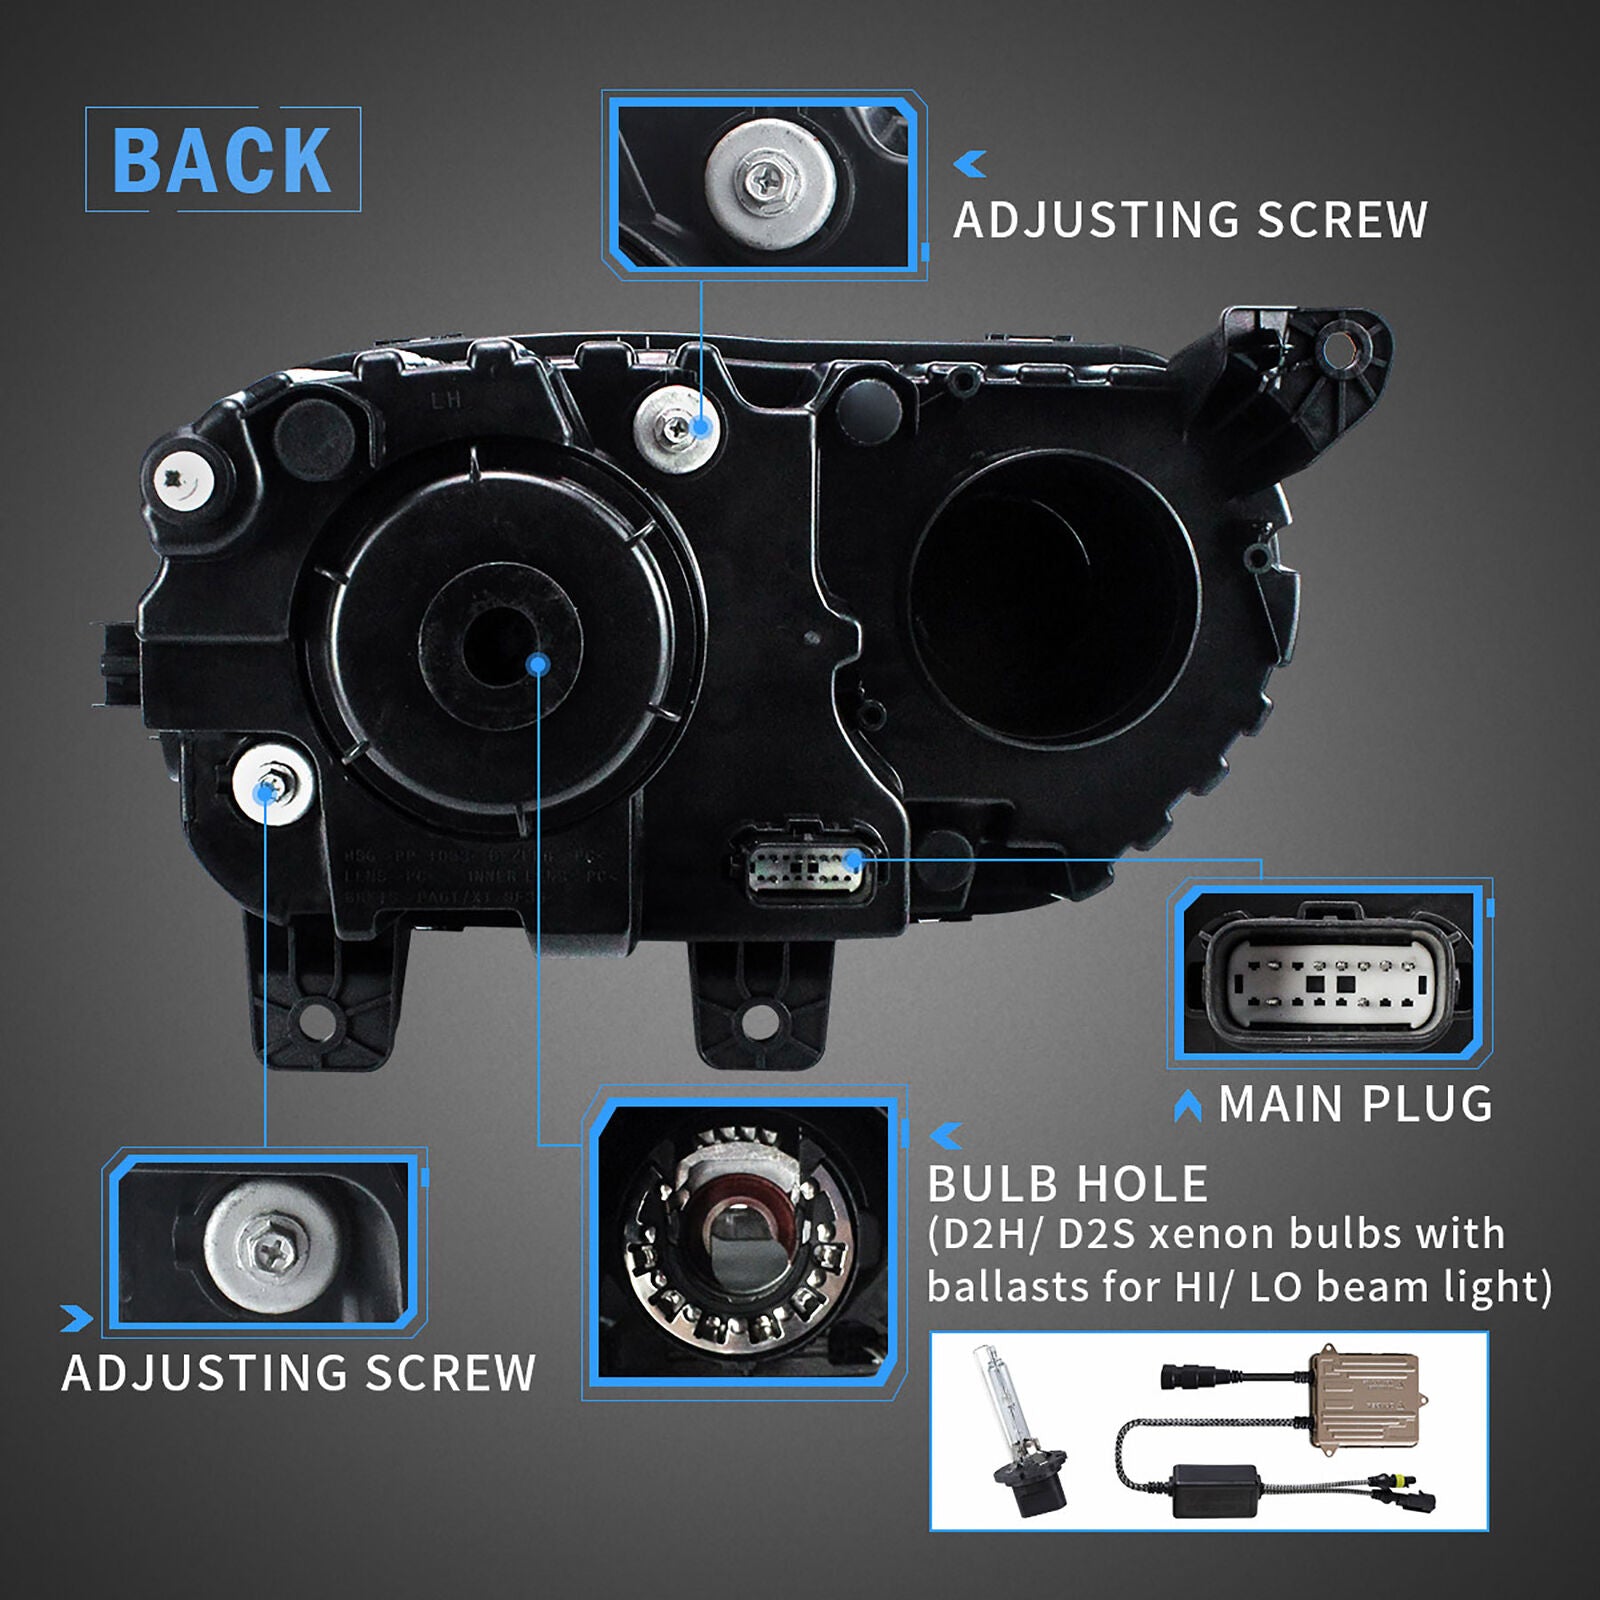 NEU LED Halogen RGB Frontscheinwerfer für Dodge Challenger SE R/T Set 2015-21